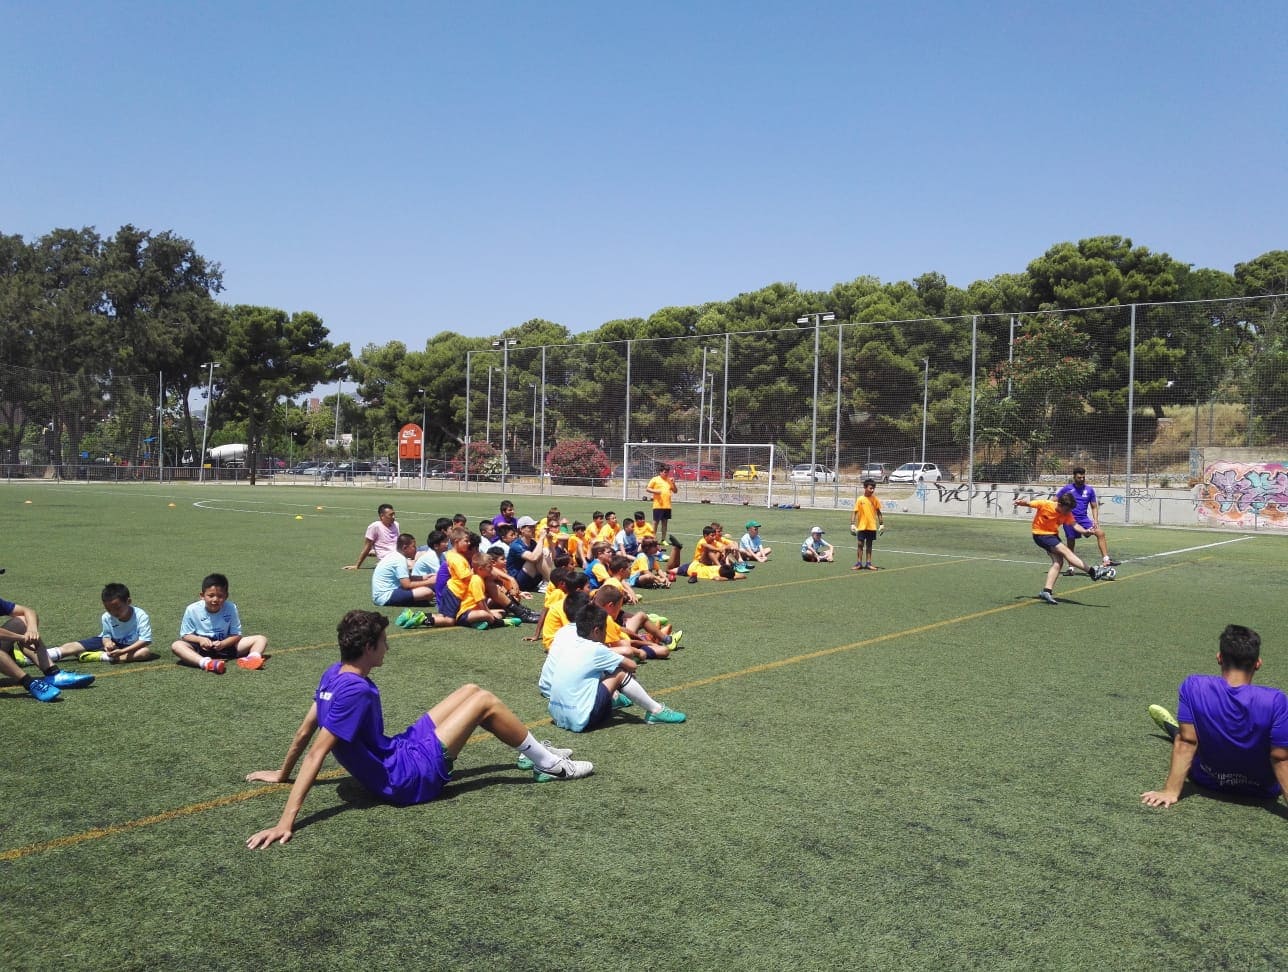 «Футбольный лагерь в Испании» – спортивный лагерь, Барселона. Путевки в детский лагерь на 2023 год, фото 3